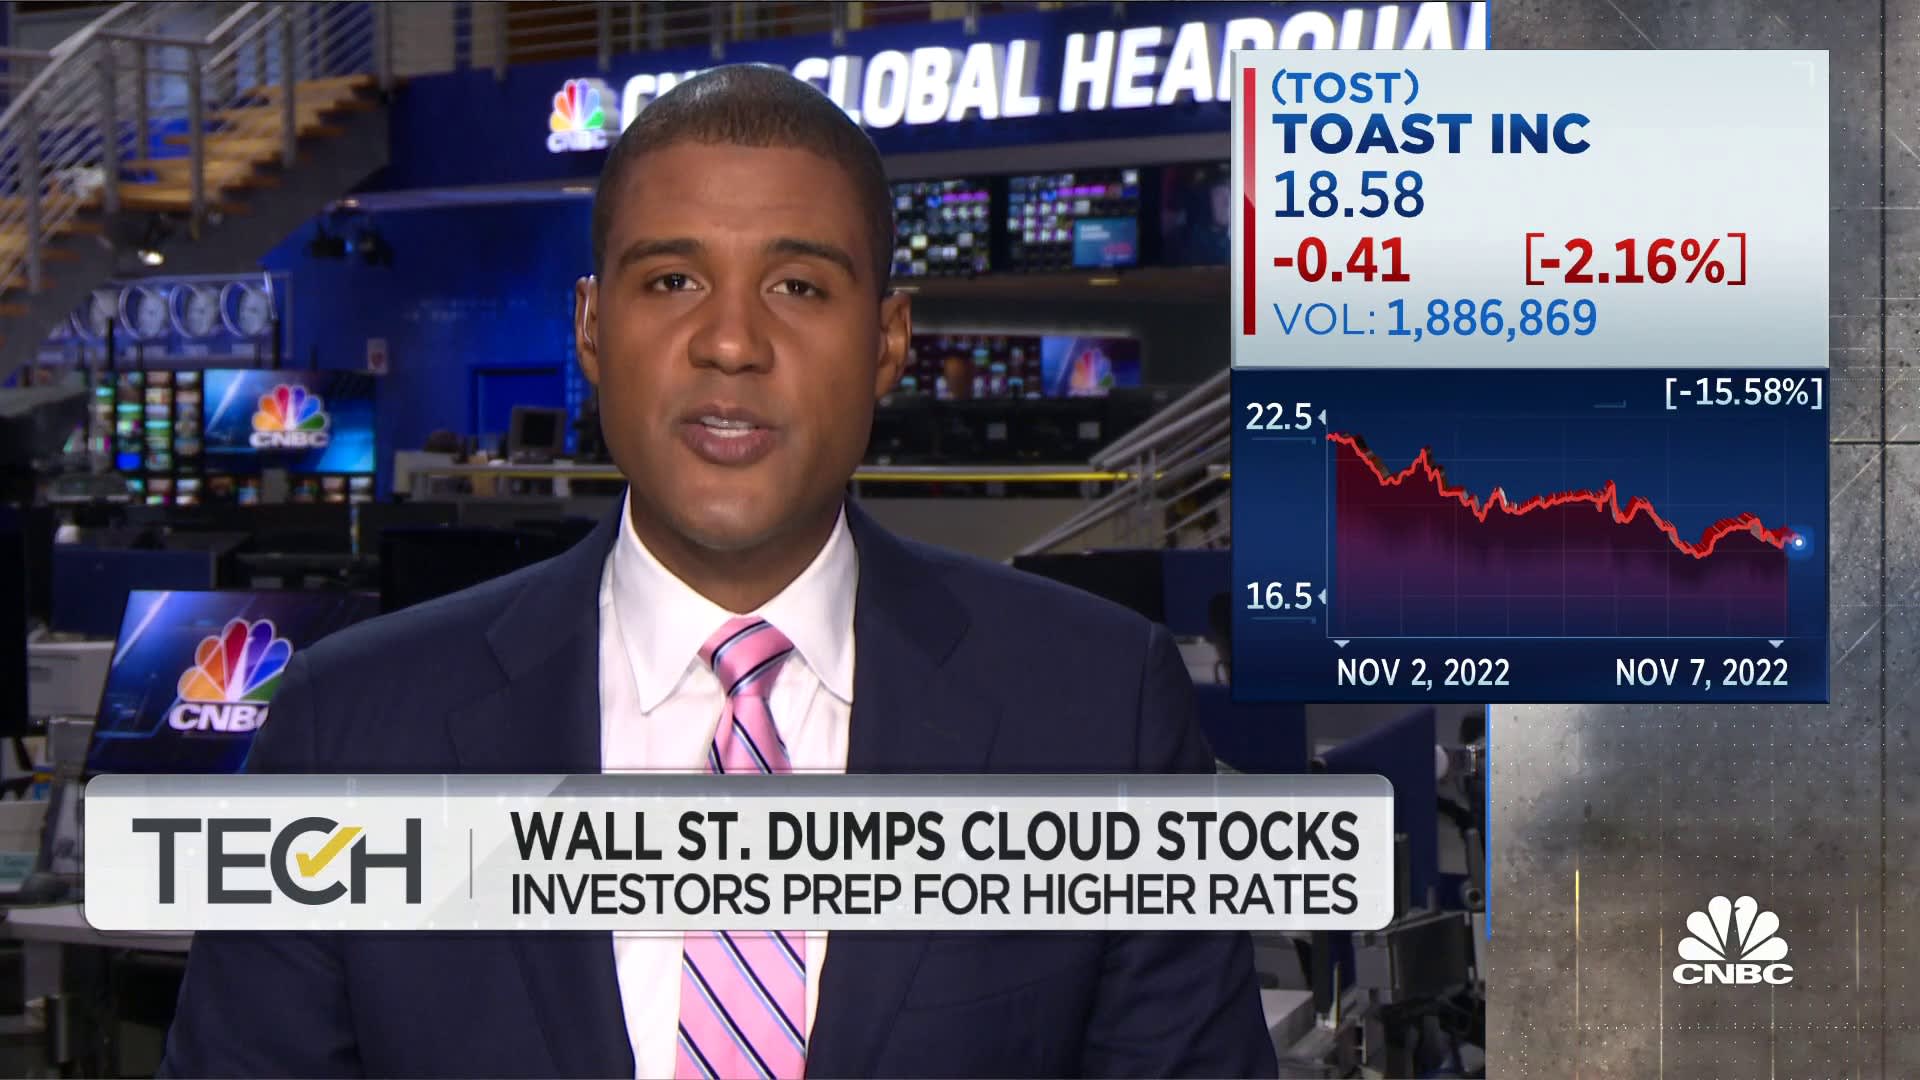 Cloud stocks face double-digit losses